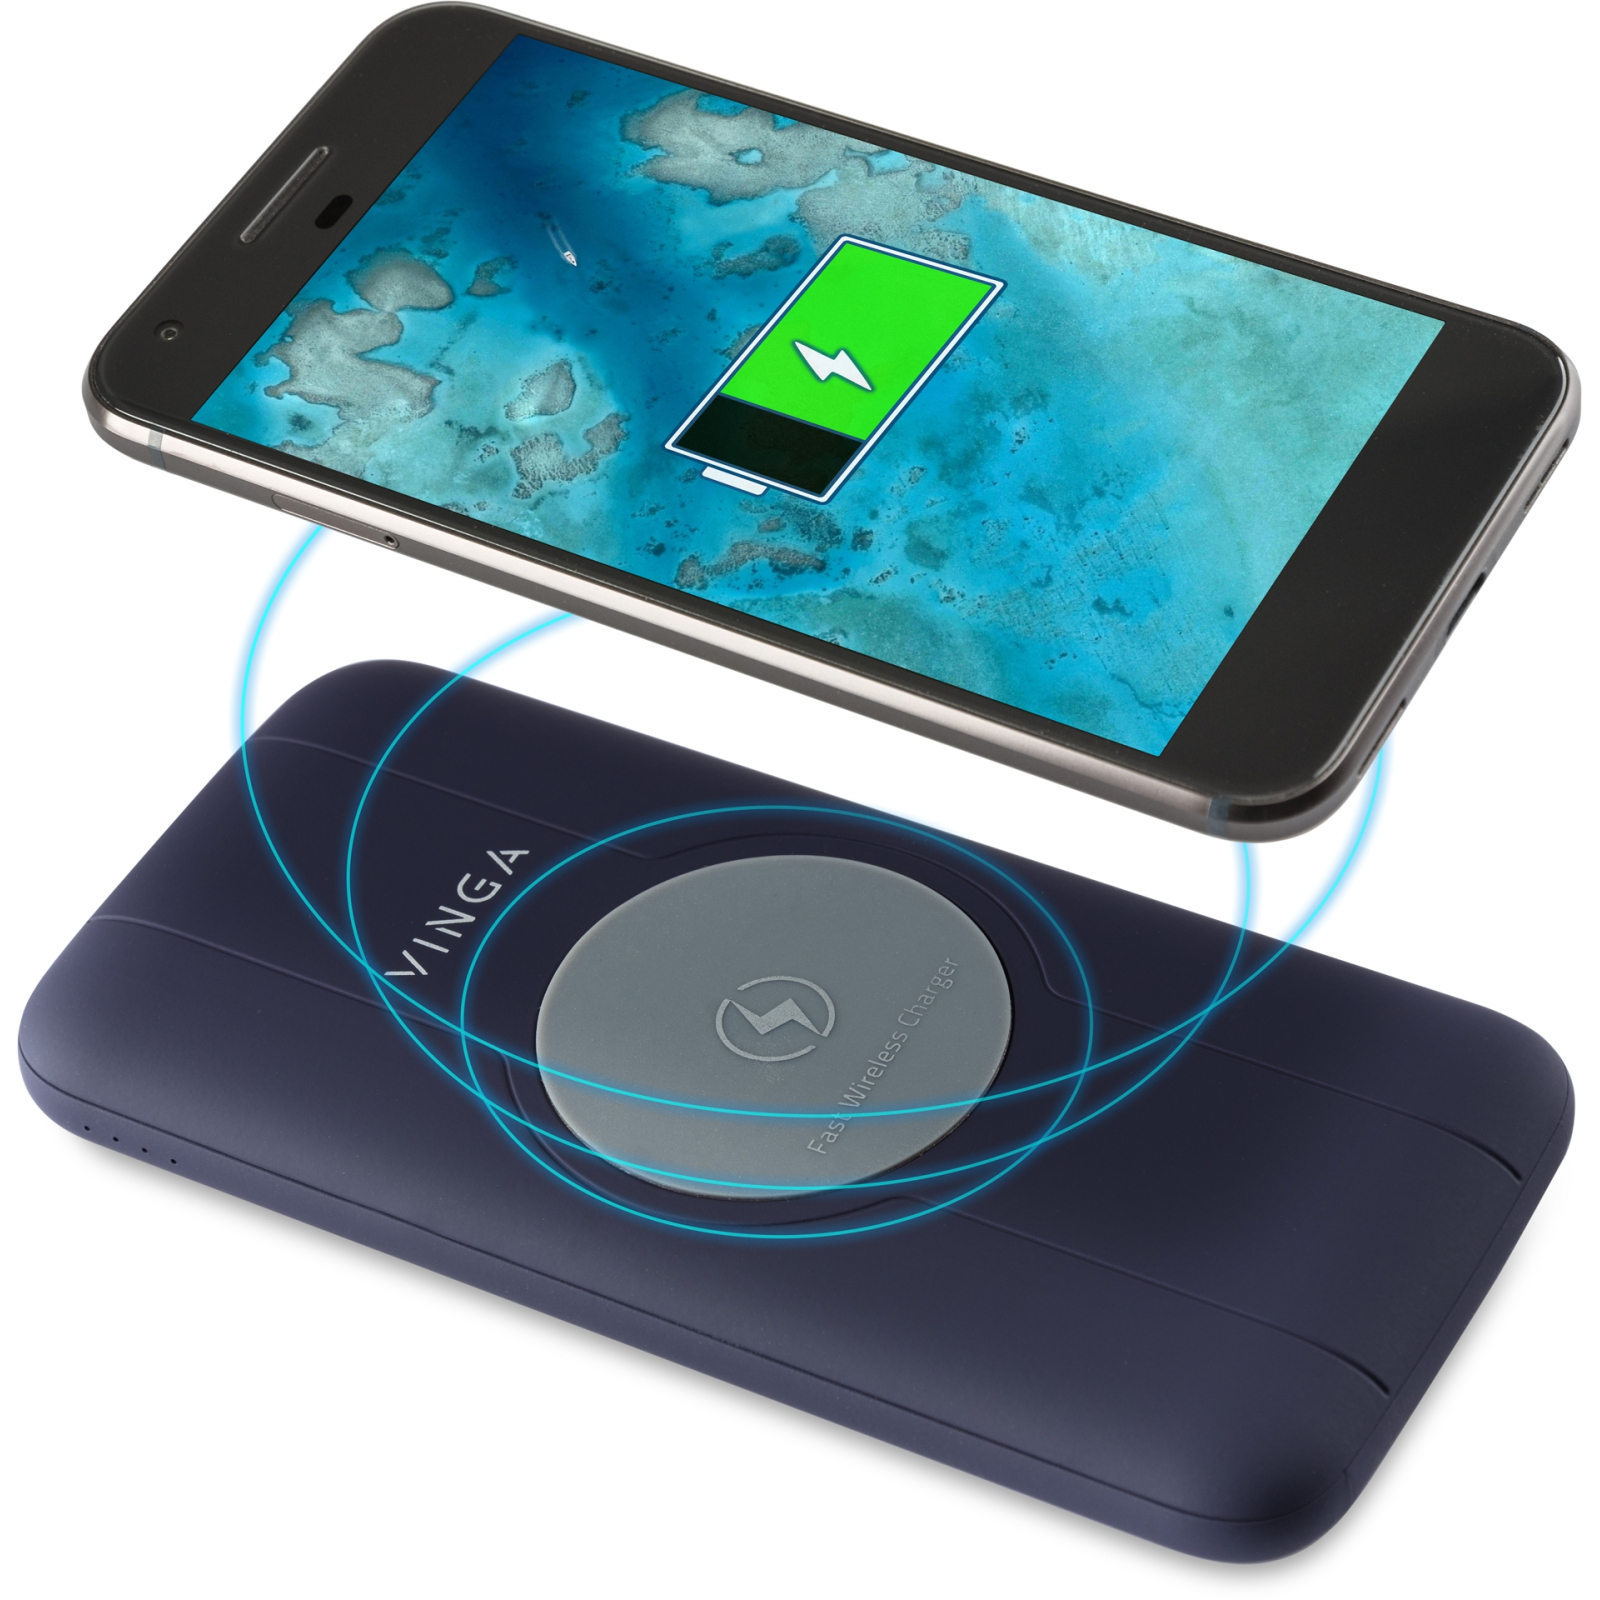 Батарея универсальная Vinga 10000 mAh Wireless QC3.0 PD soft touch blue (BTPB3510WLROBL) изображение 8